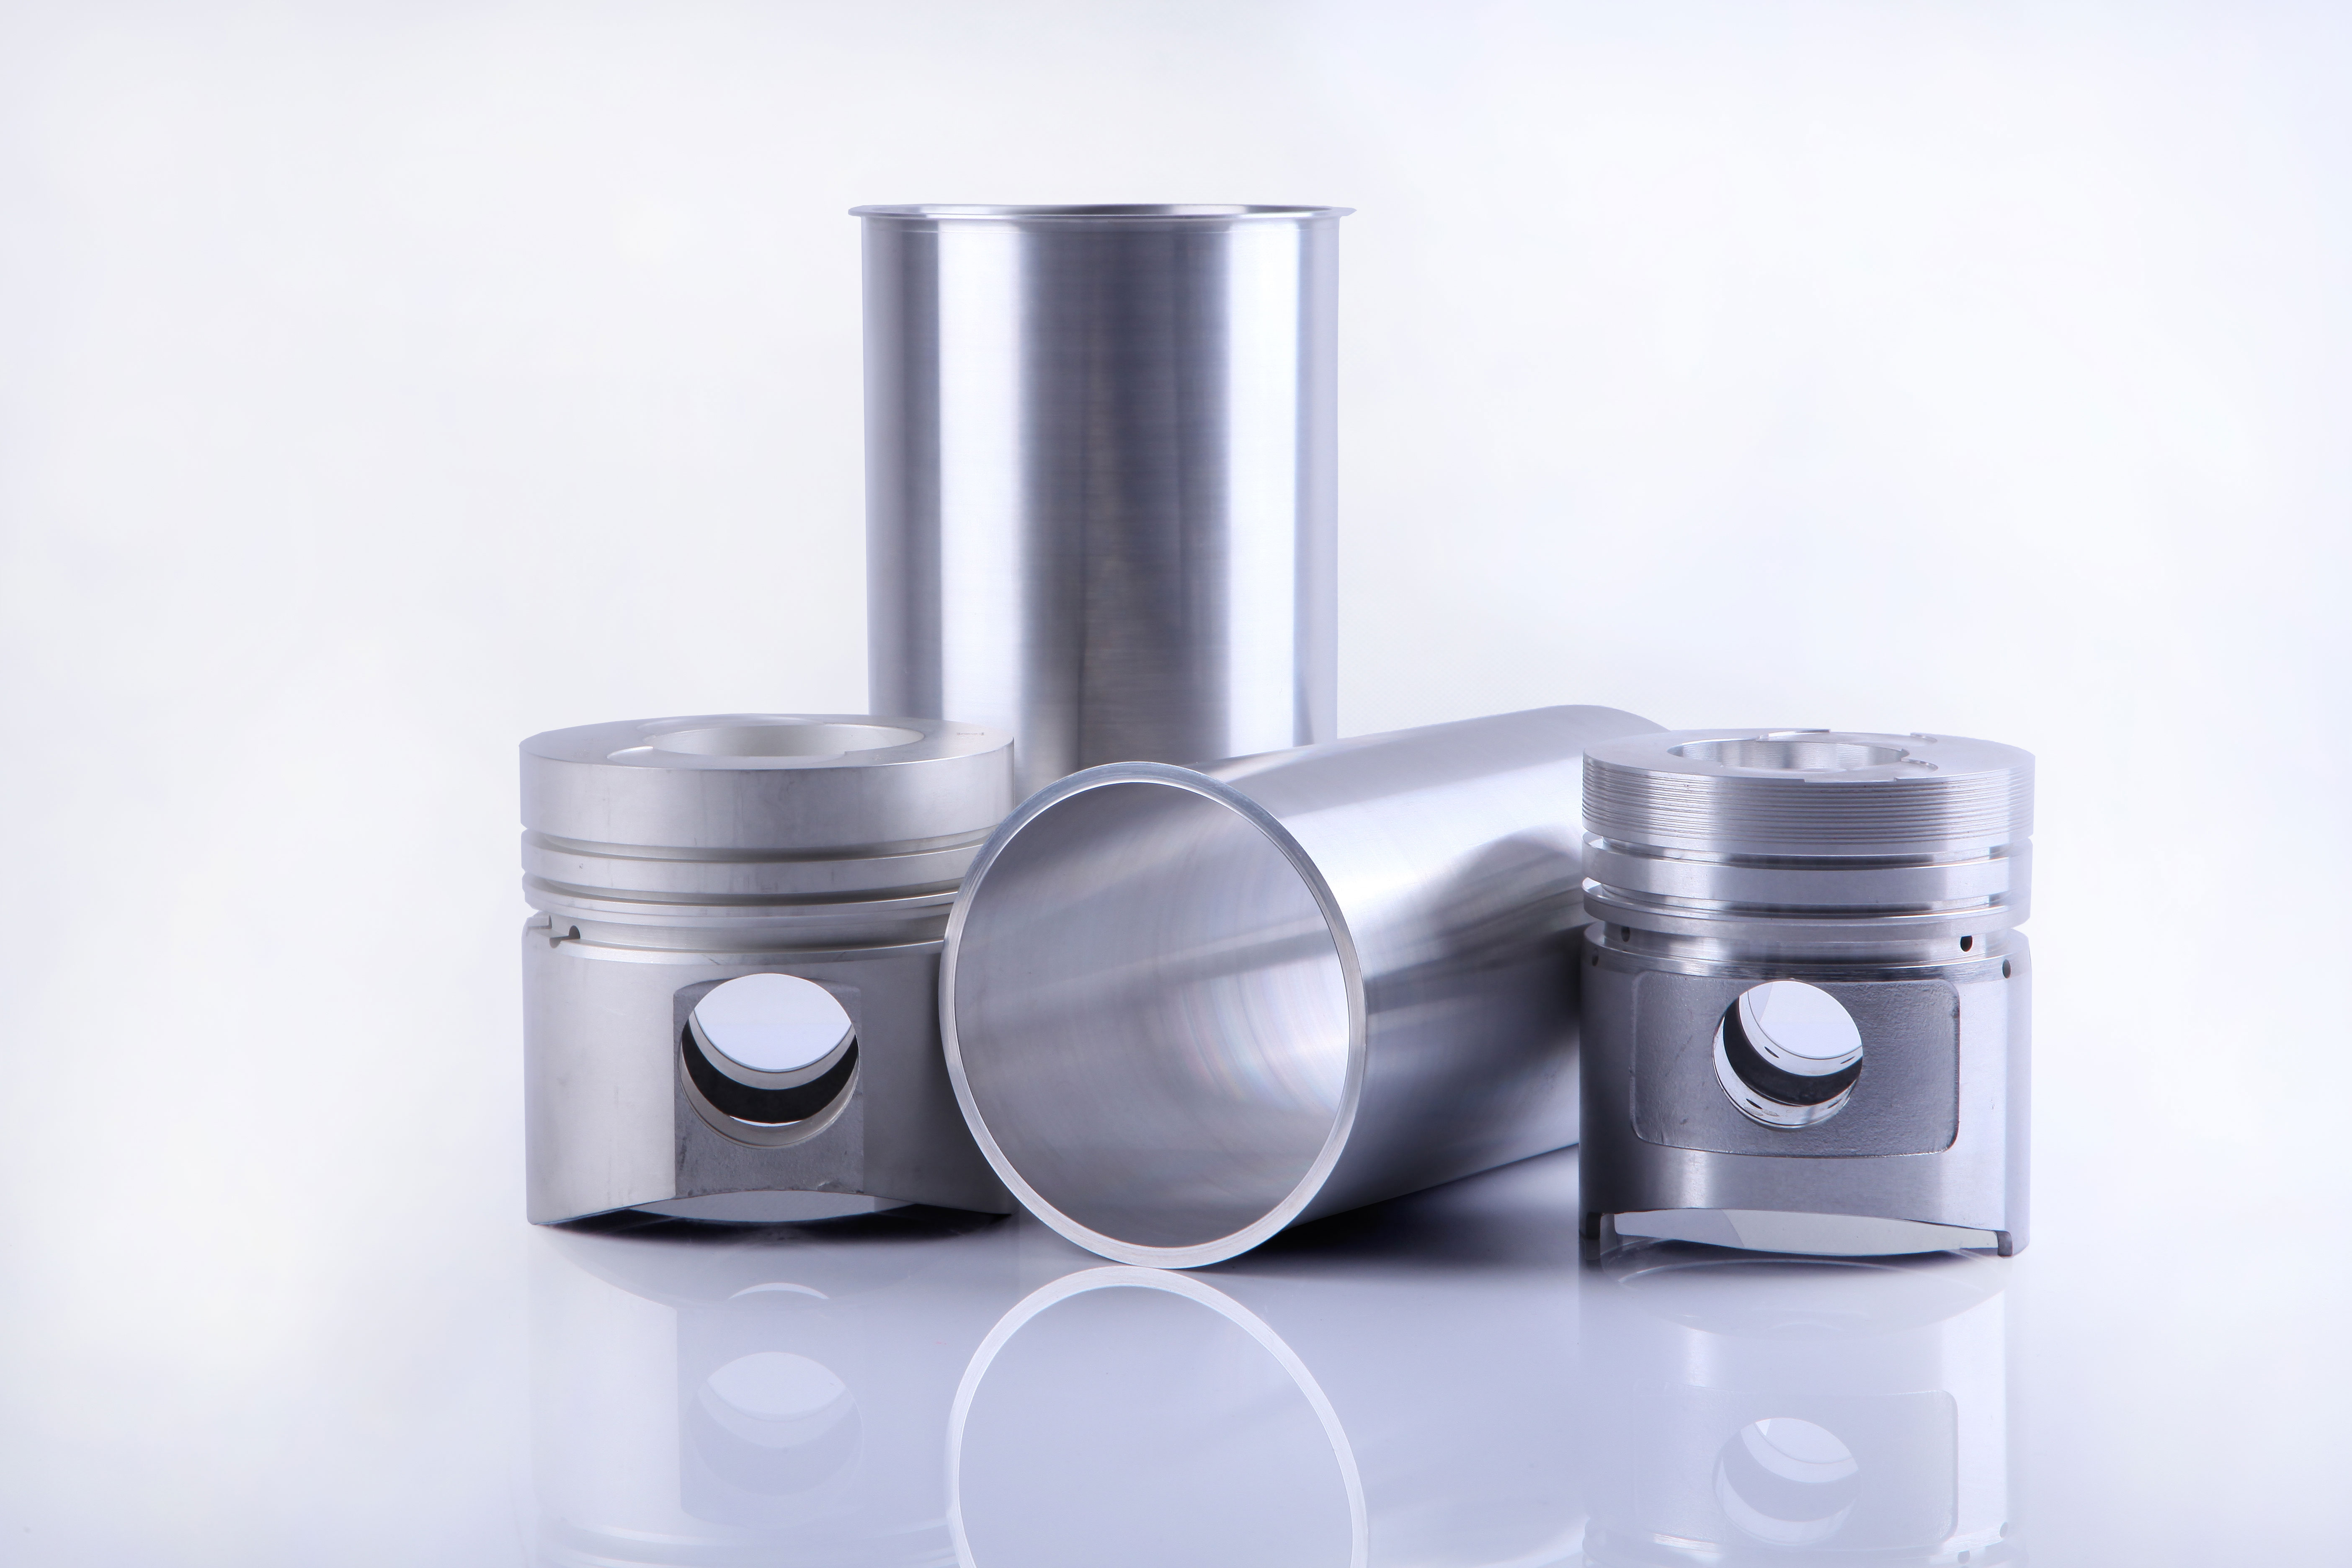 Cilinderhulzen in aluminium matrixcomposiet